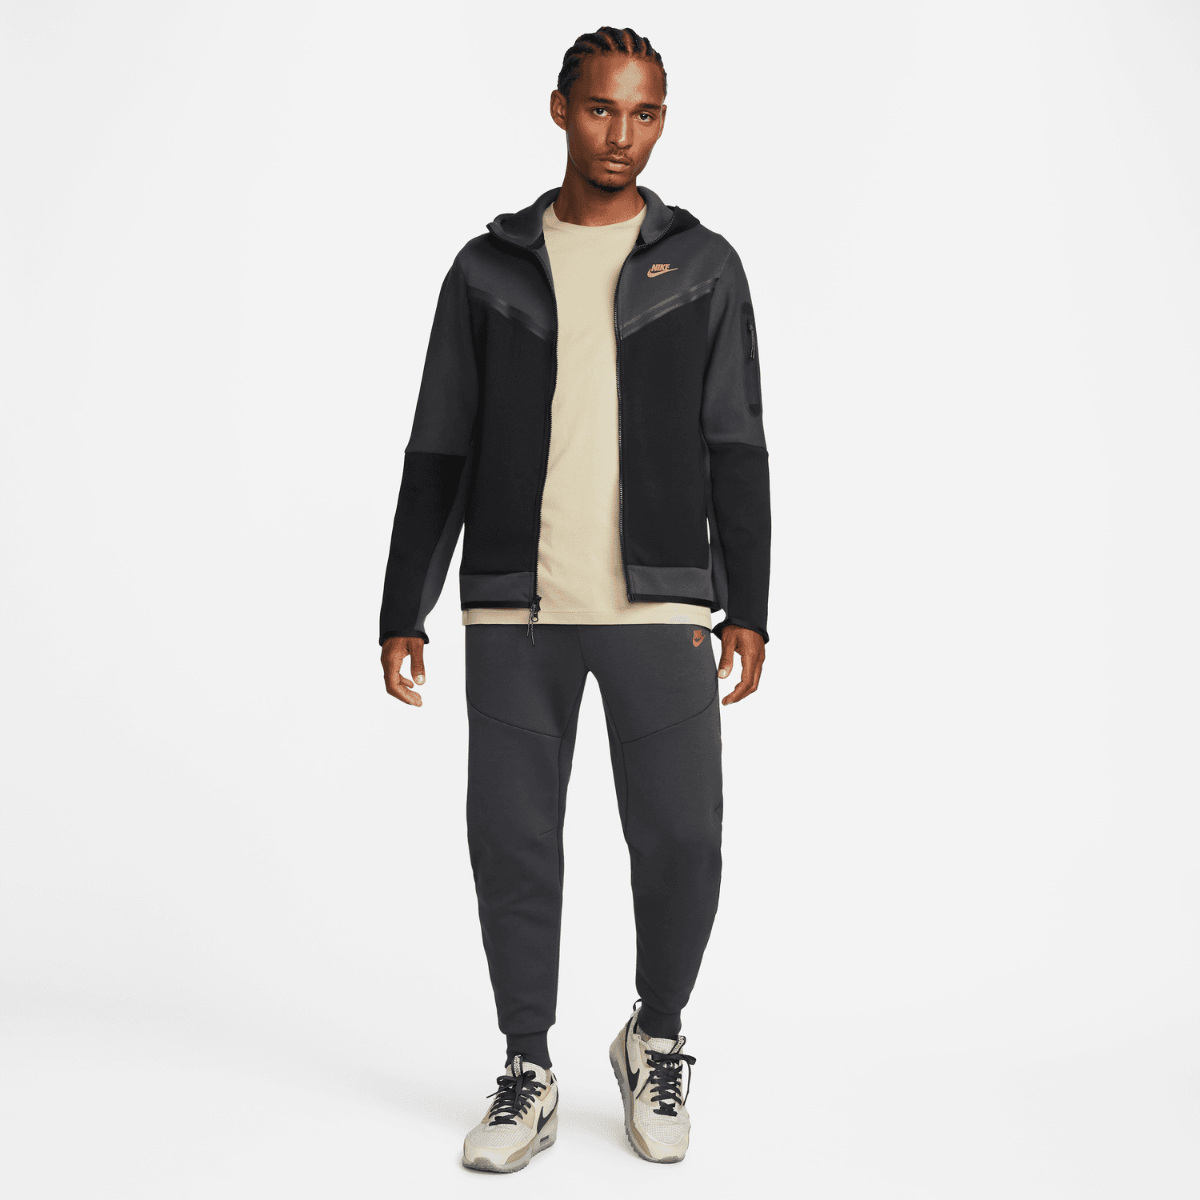 Veste à capuche Nike Tech Fleece - Noir/Gris/Or